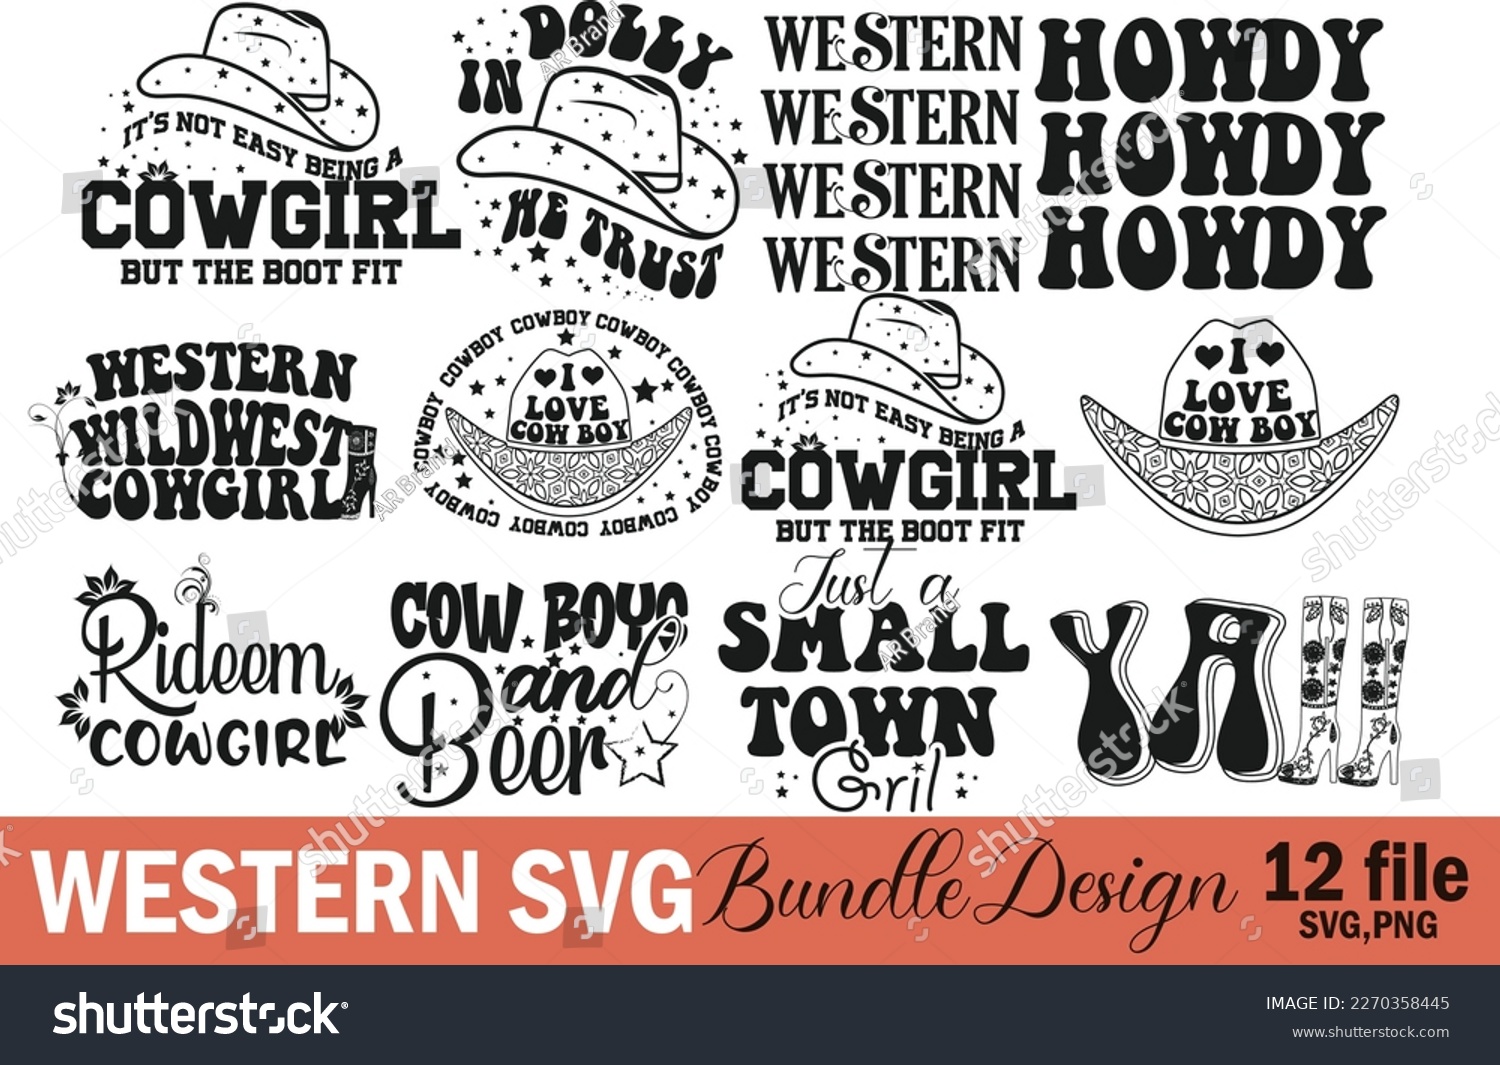 SVG of Western Cowboy cowgirl Bundle Design  svg